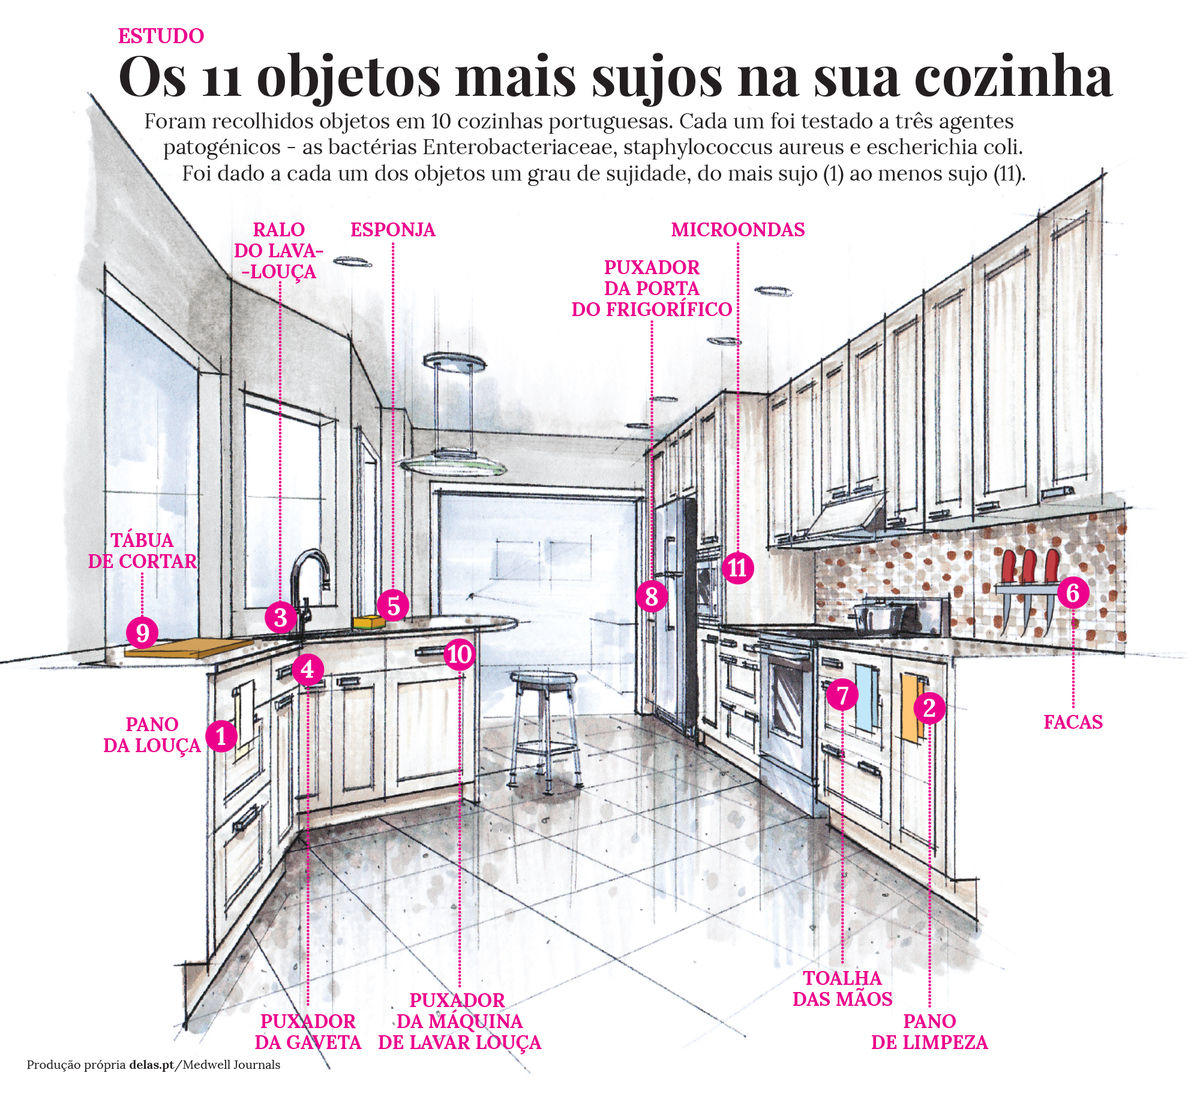 11 objetos mais sujos da sua cozinha